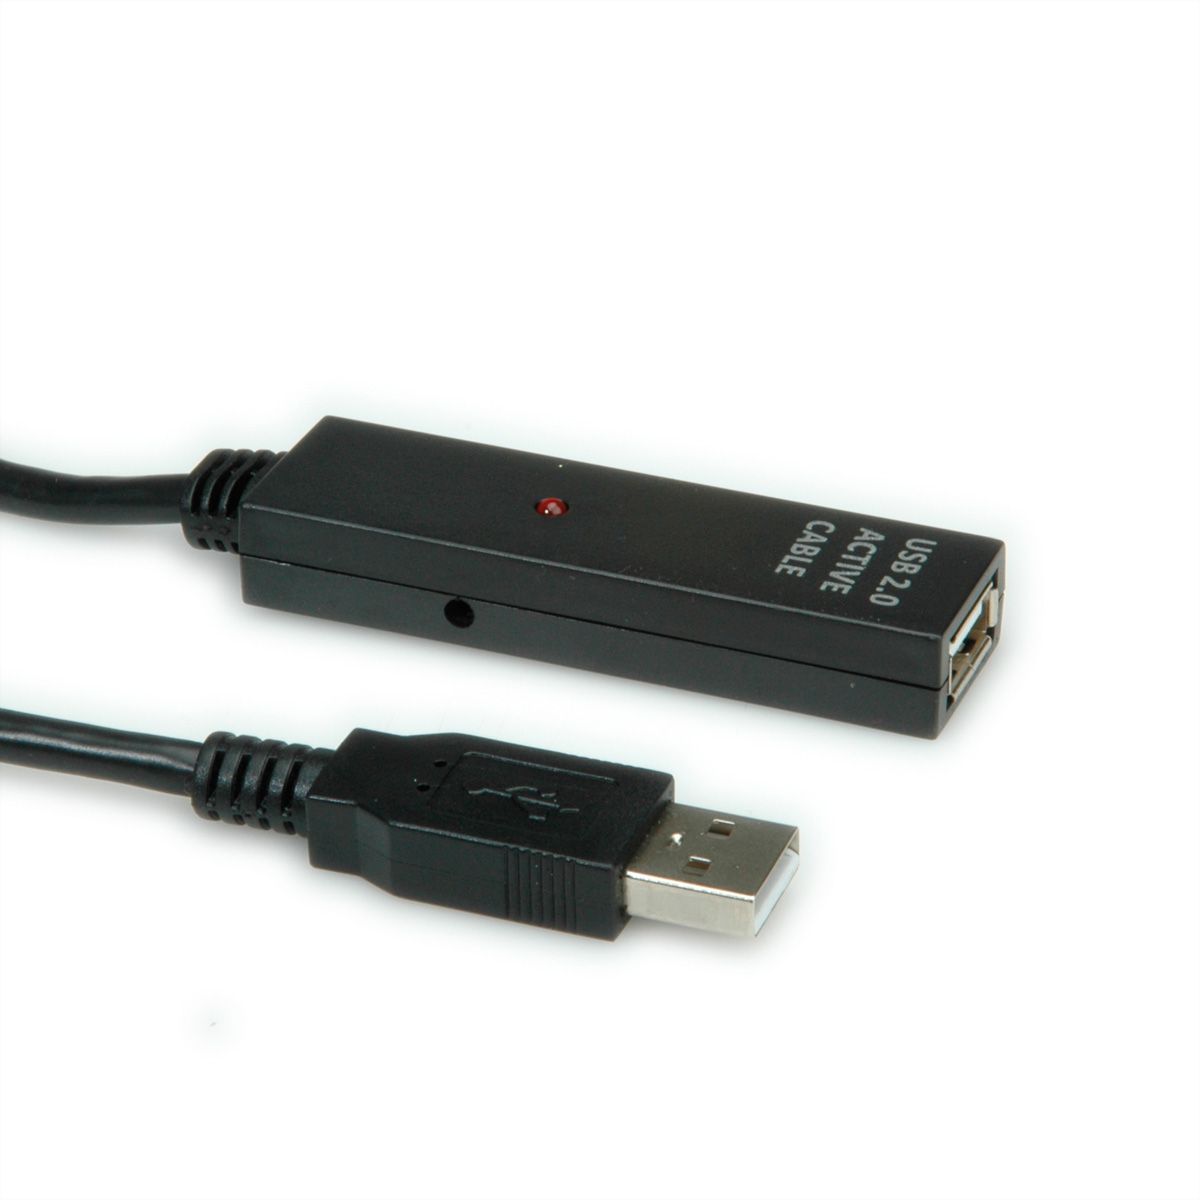 Connectique informatique Temium Câble rallonge USB 2.0 3m Gris